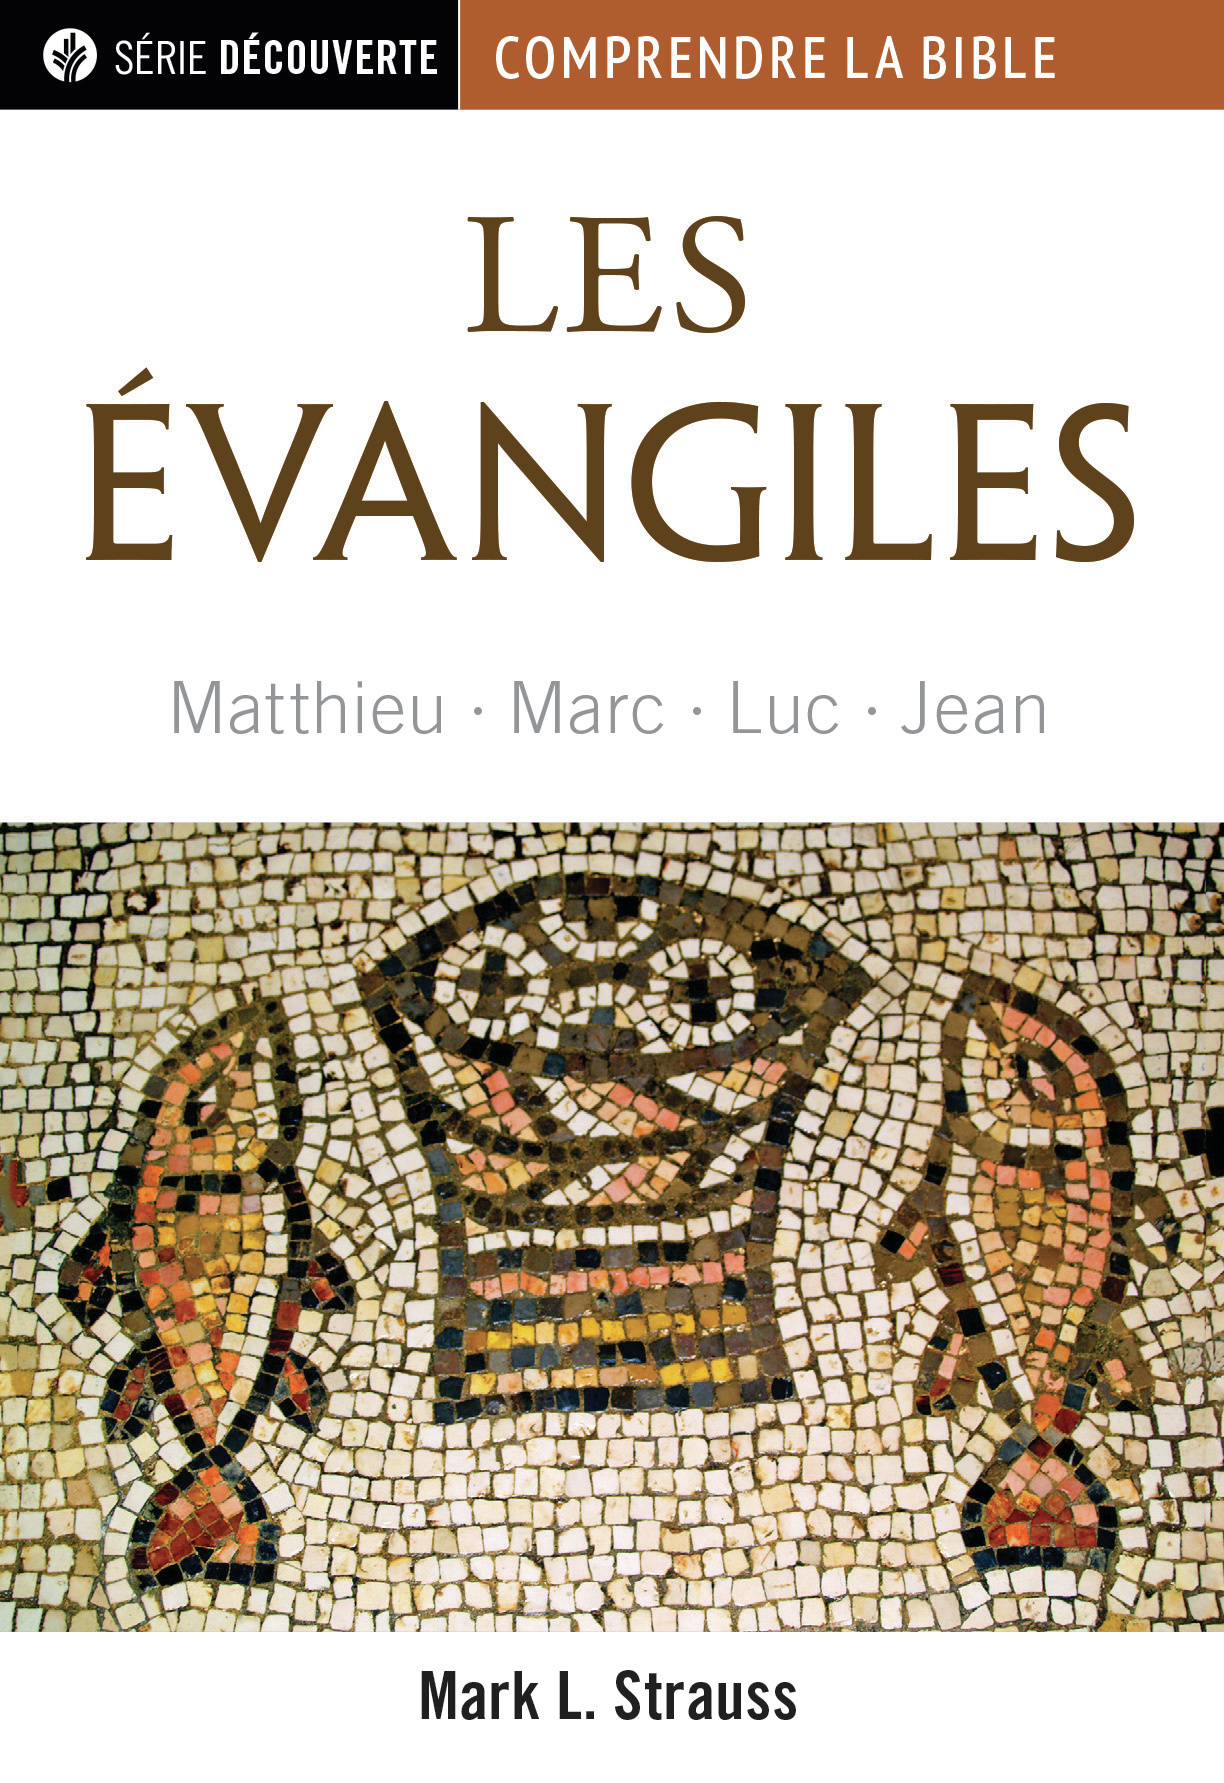 Évangiles (Les) - Matthieu, Marc, Luc, Jean [brochure NPQ série découverte - Comprendre la Bible]